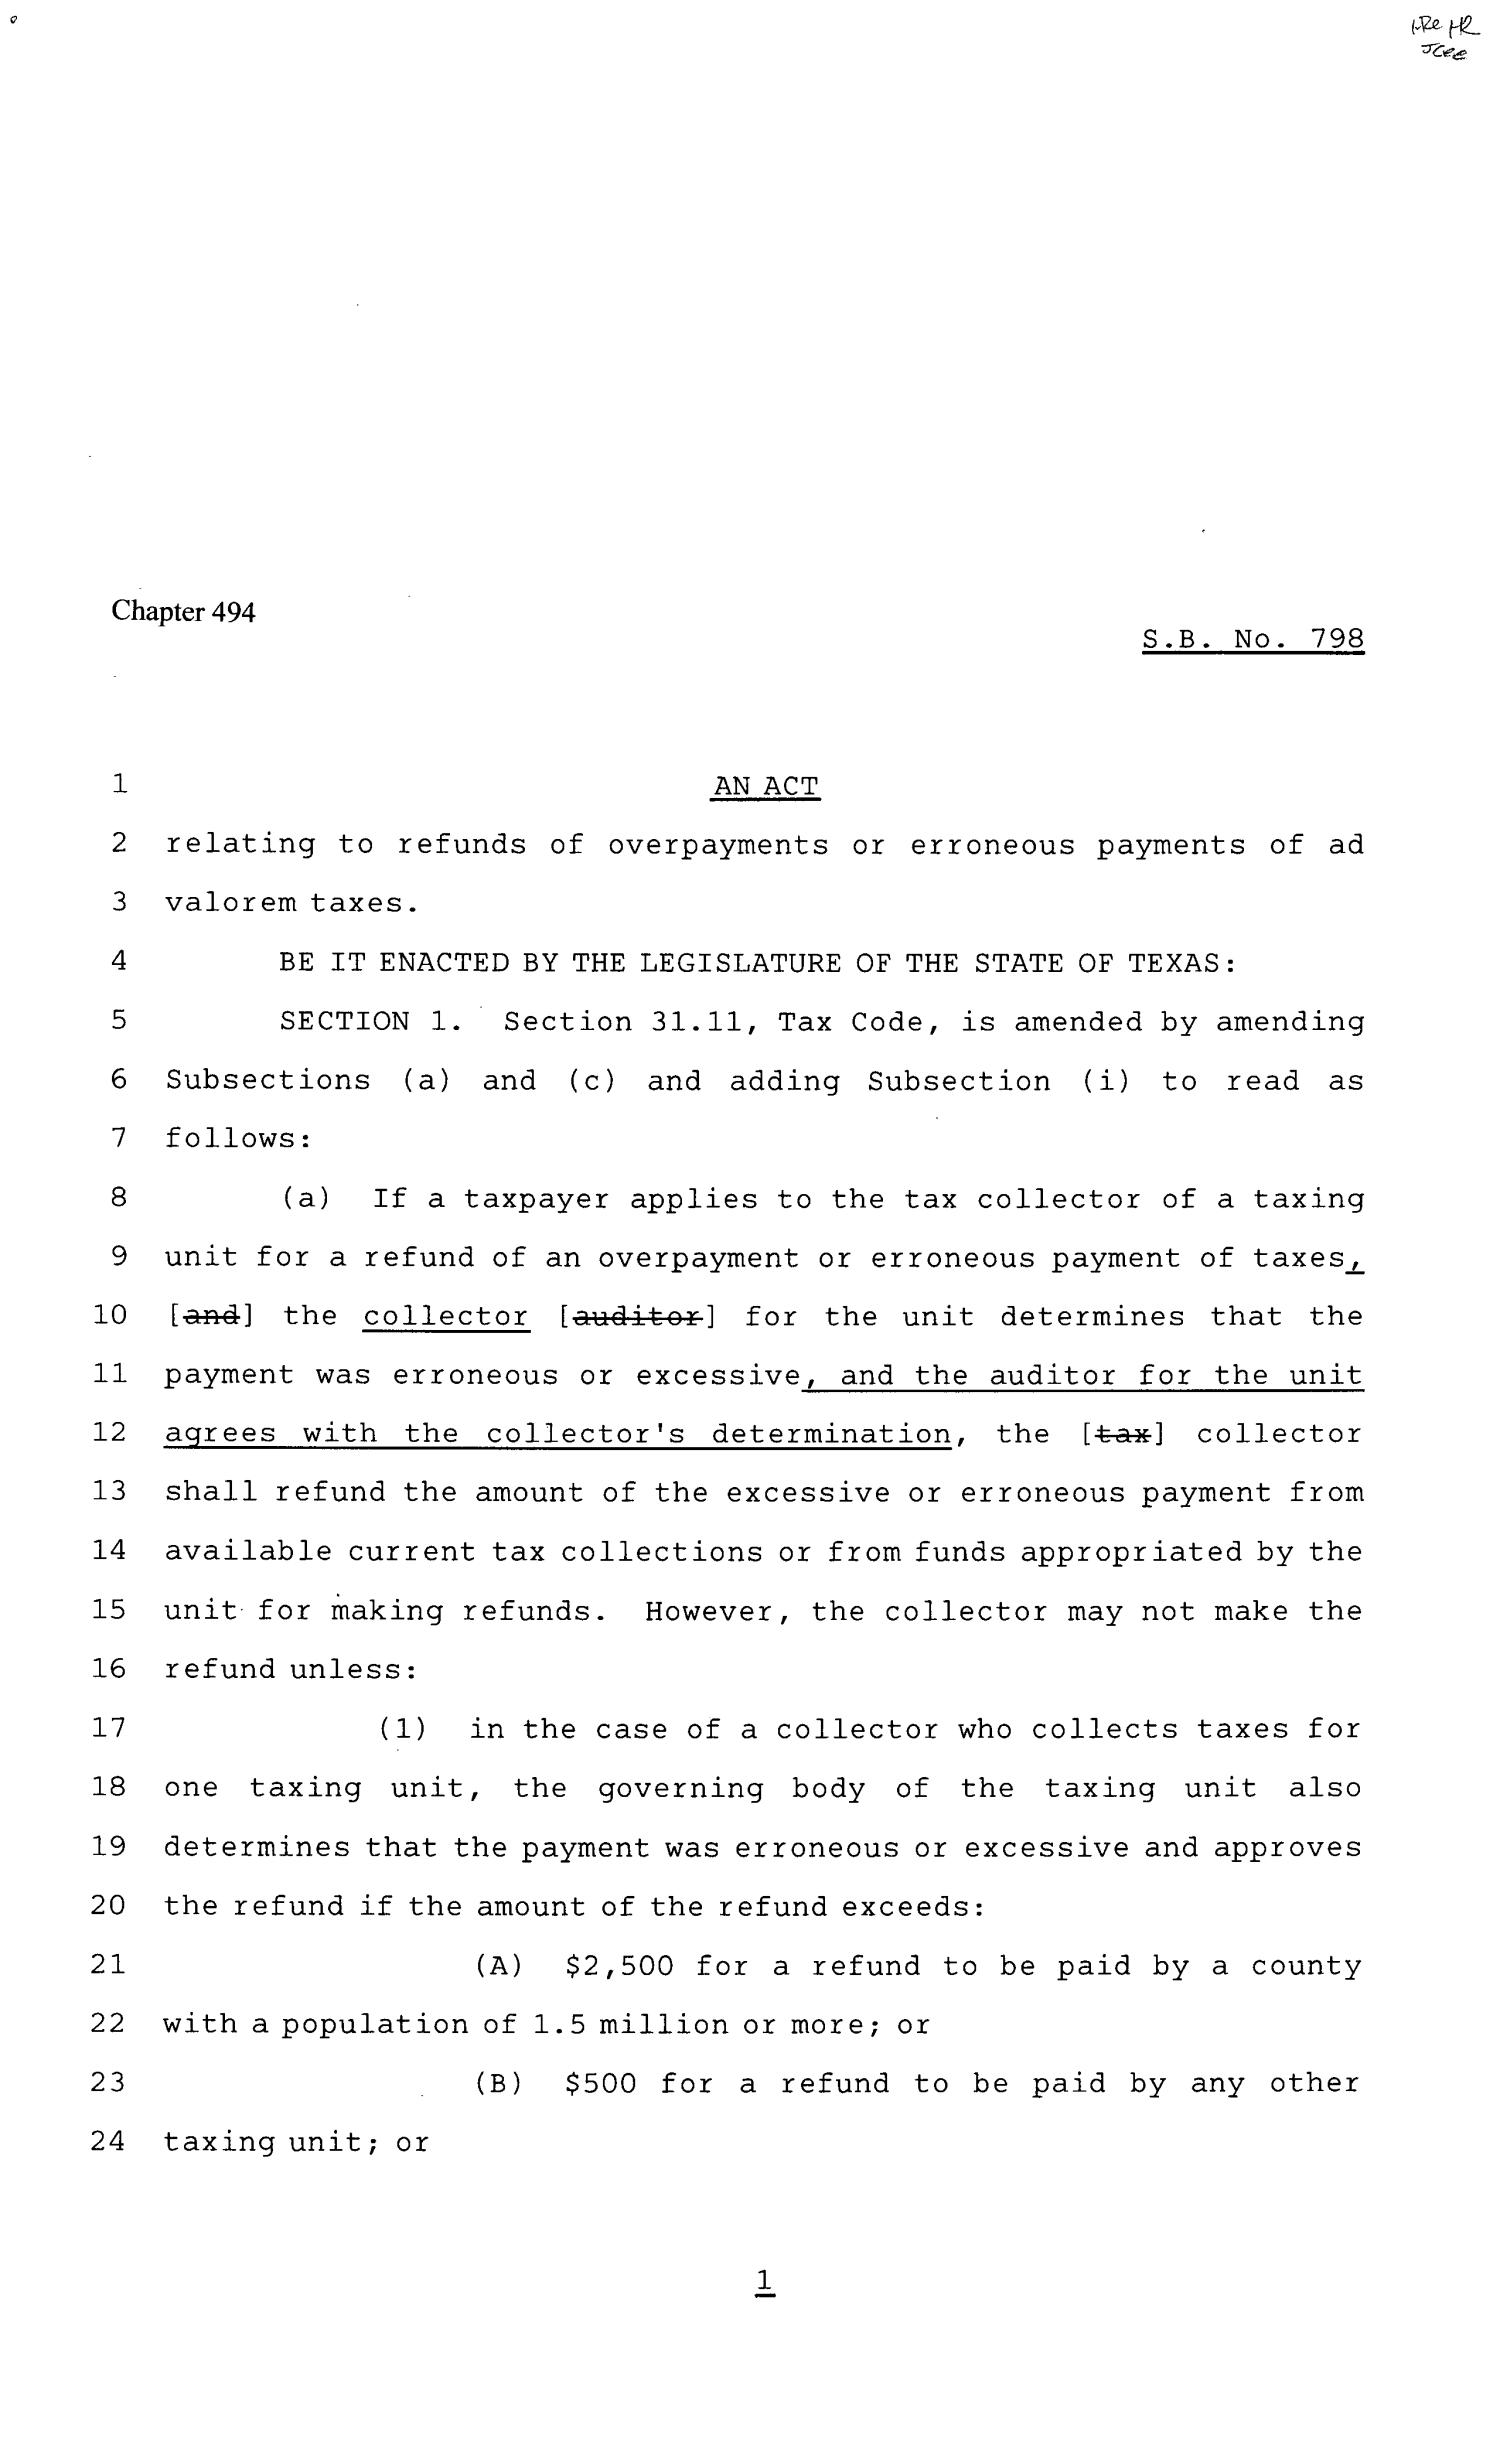 81st Texas Legislature, Senate Bill 798, Chapter 494
                                                
                                                    [Sequence #]: 1 of 4
                                                